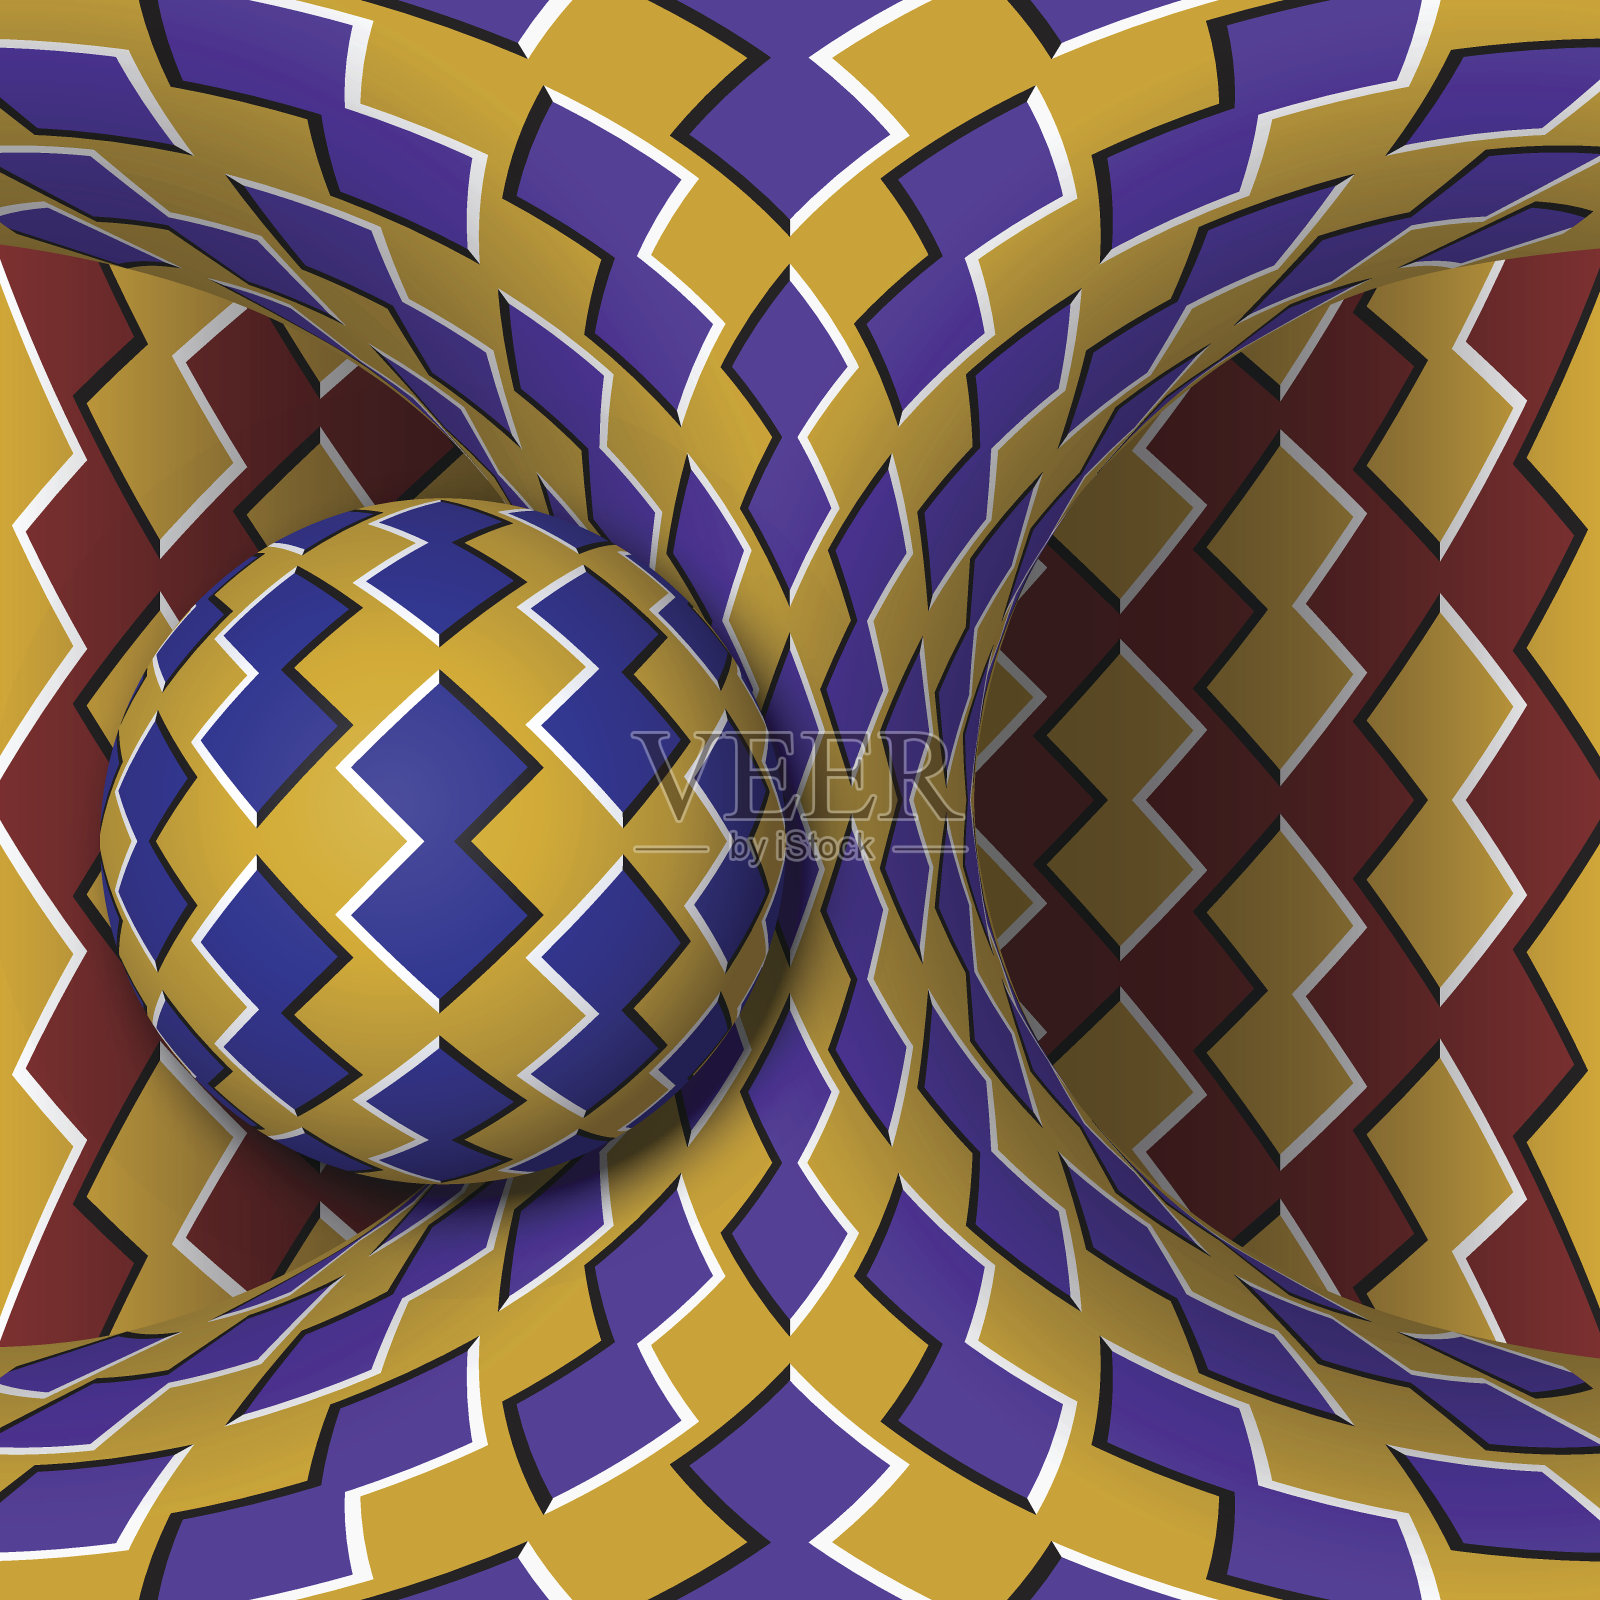 光学运动错觉插图。一个球体围绕一个运动的双曲面旋转。超现实主义风格的抽象幻想。插画图片素材